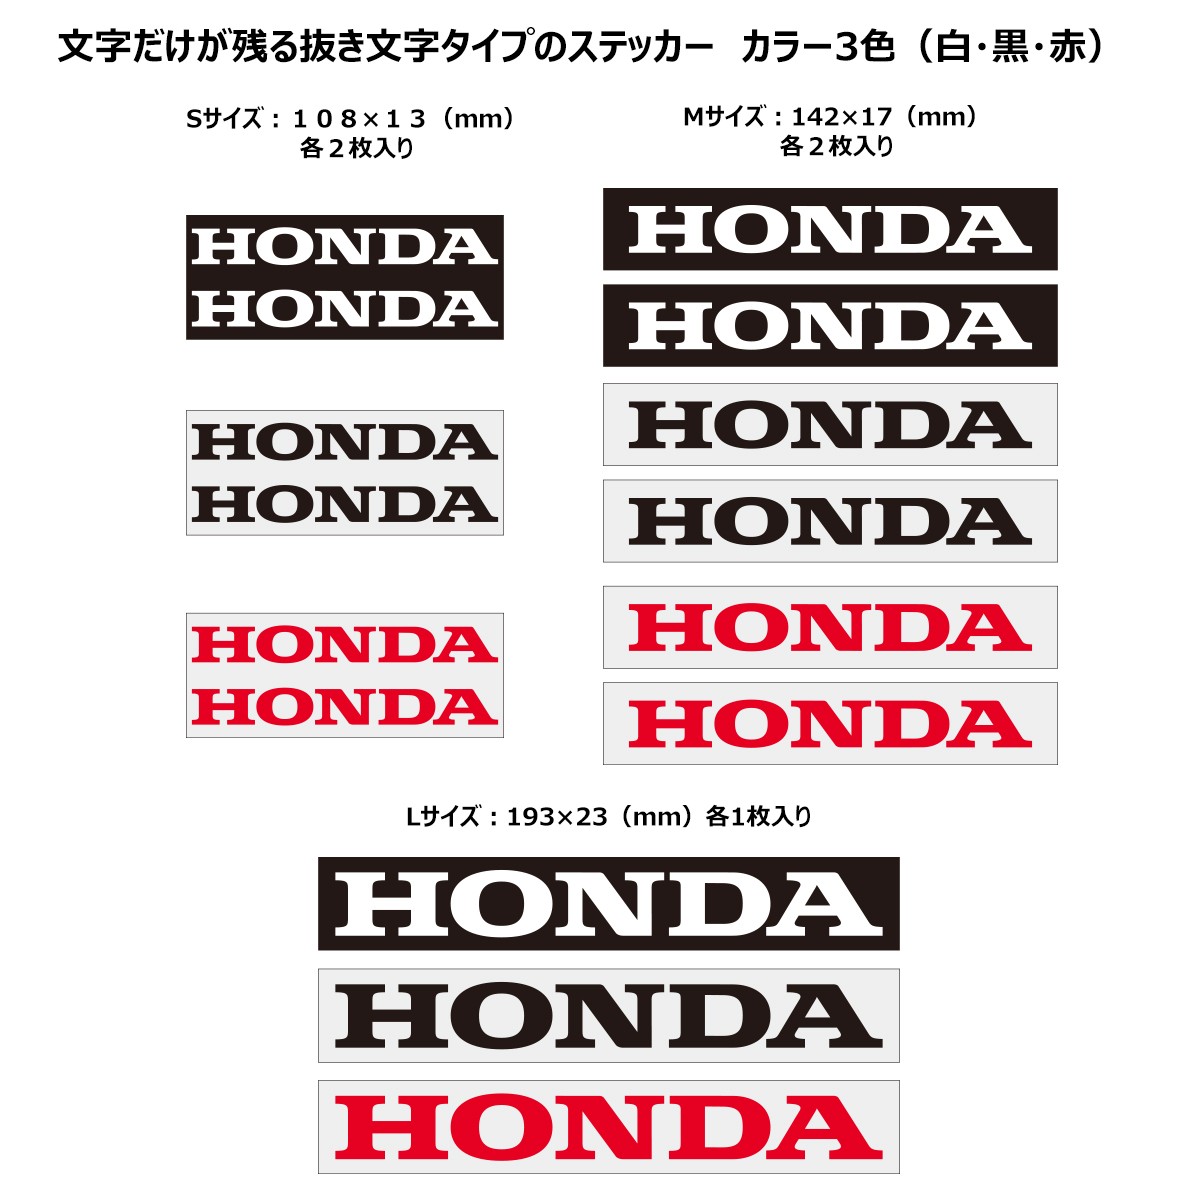 メーカーロゴステッカー HONDA ホンダ・HRC 通販 -あるふぁここ プラザ店-